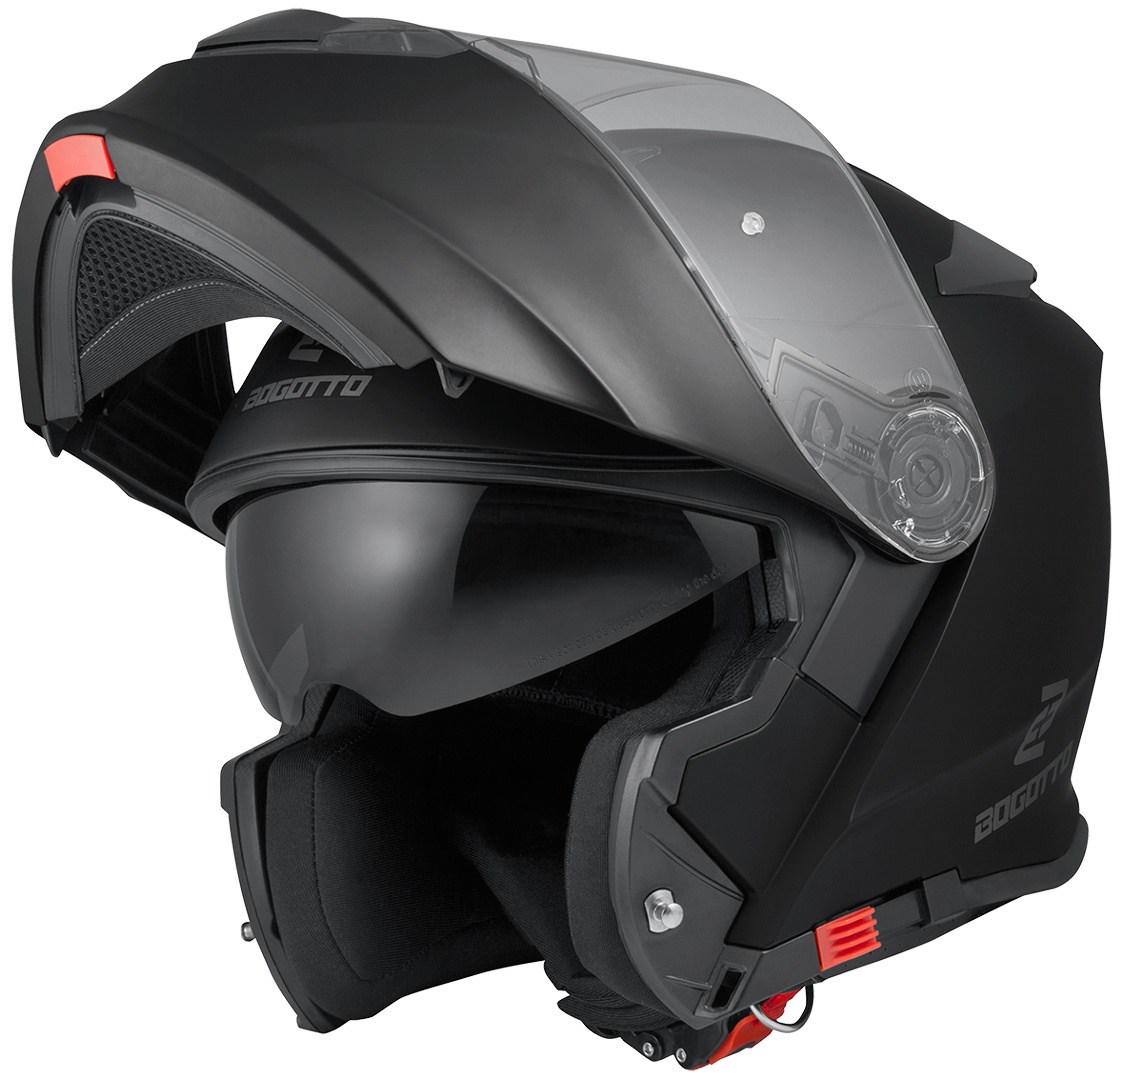 Мотоциклетный шлем Bogotto V271 с логотипом, черный мотоциклетный шлем со светодиодной подсветкой